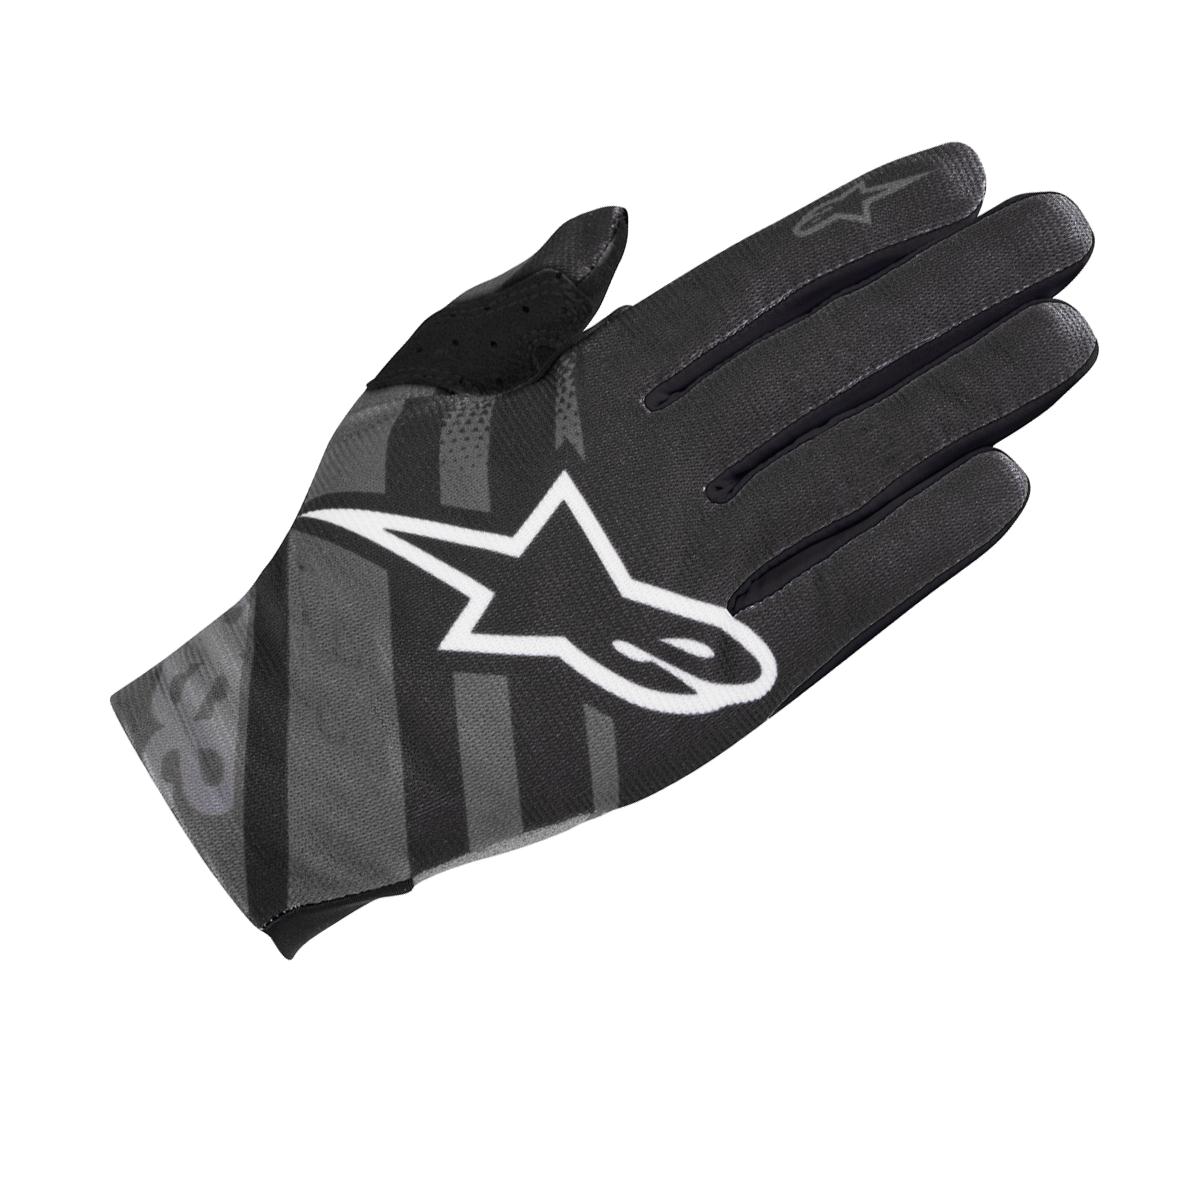 ALPINESTARS Racer Glove 2018 Black/Dark Shadow M